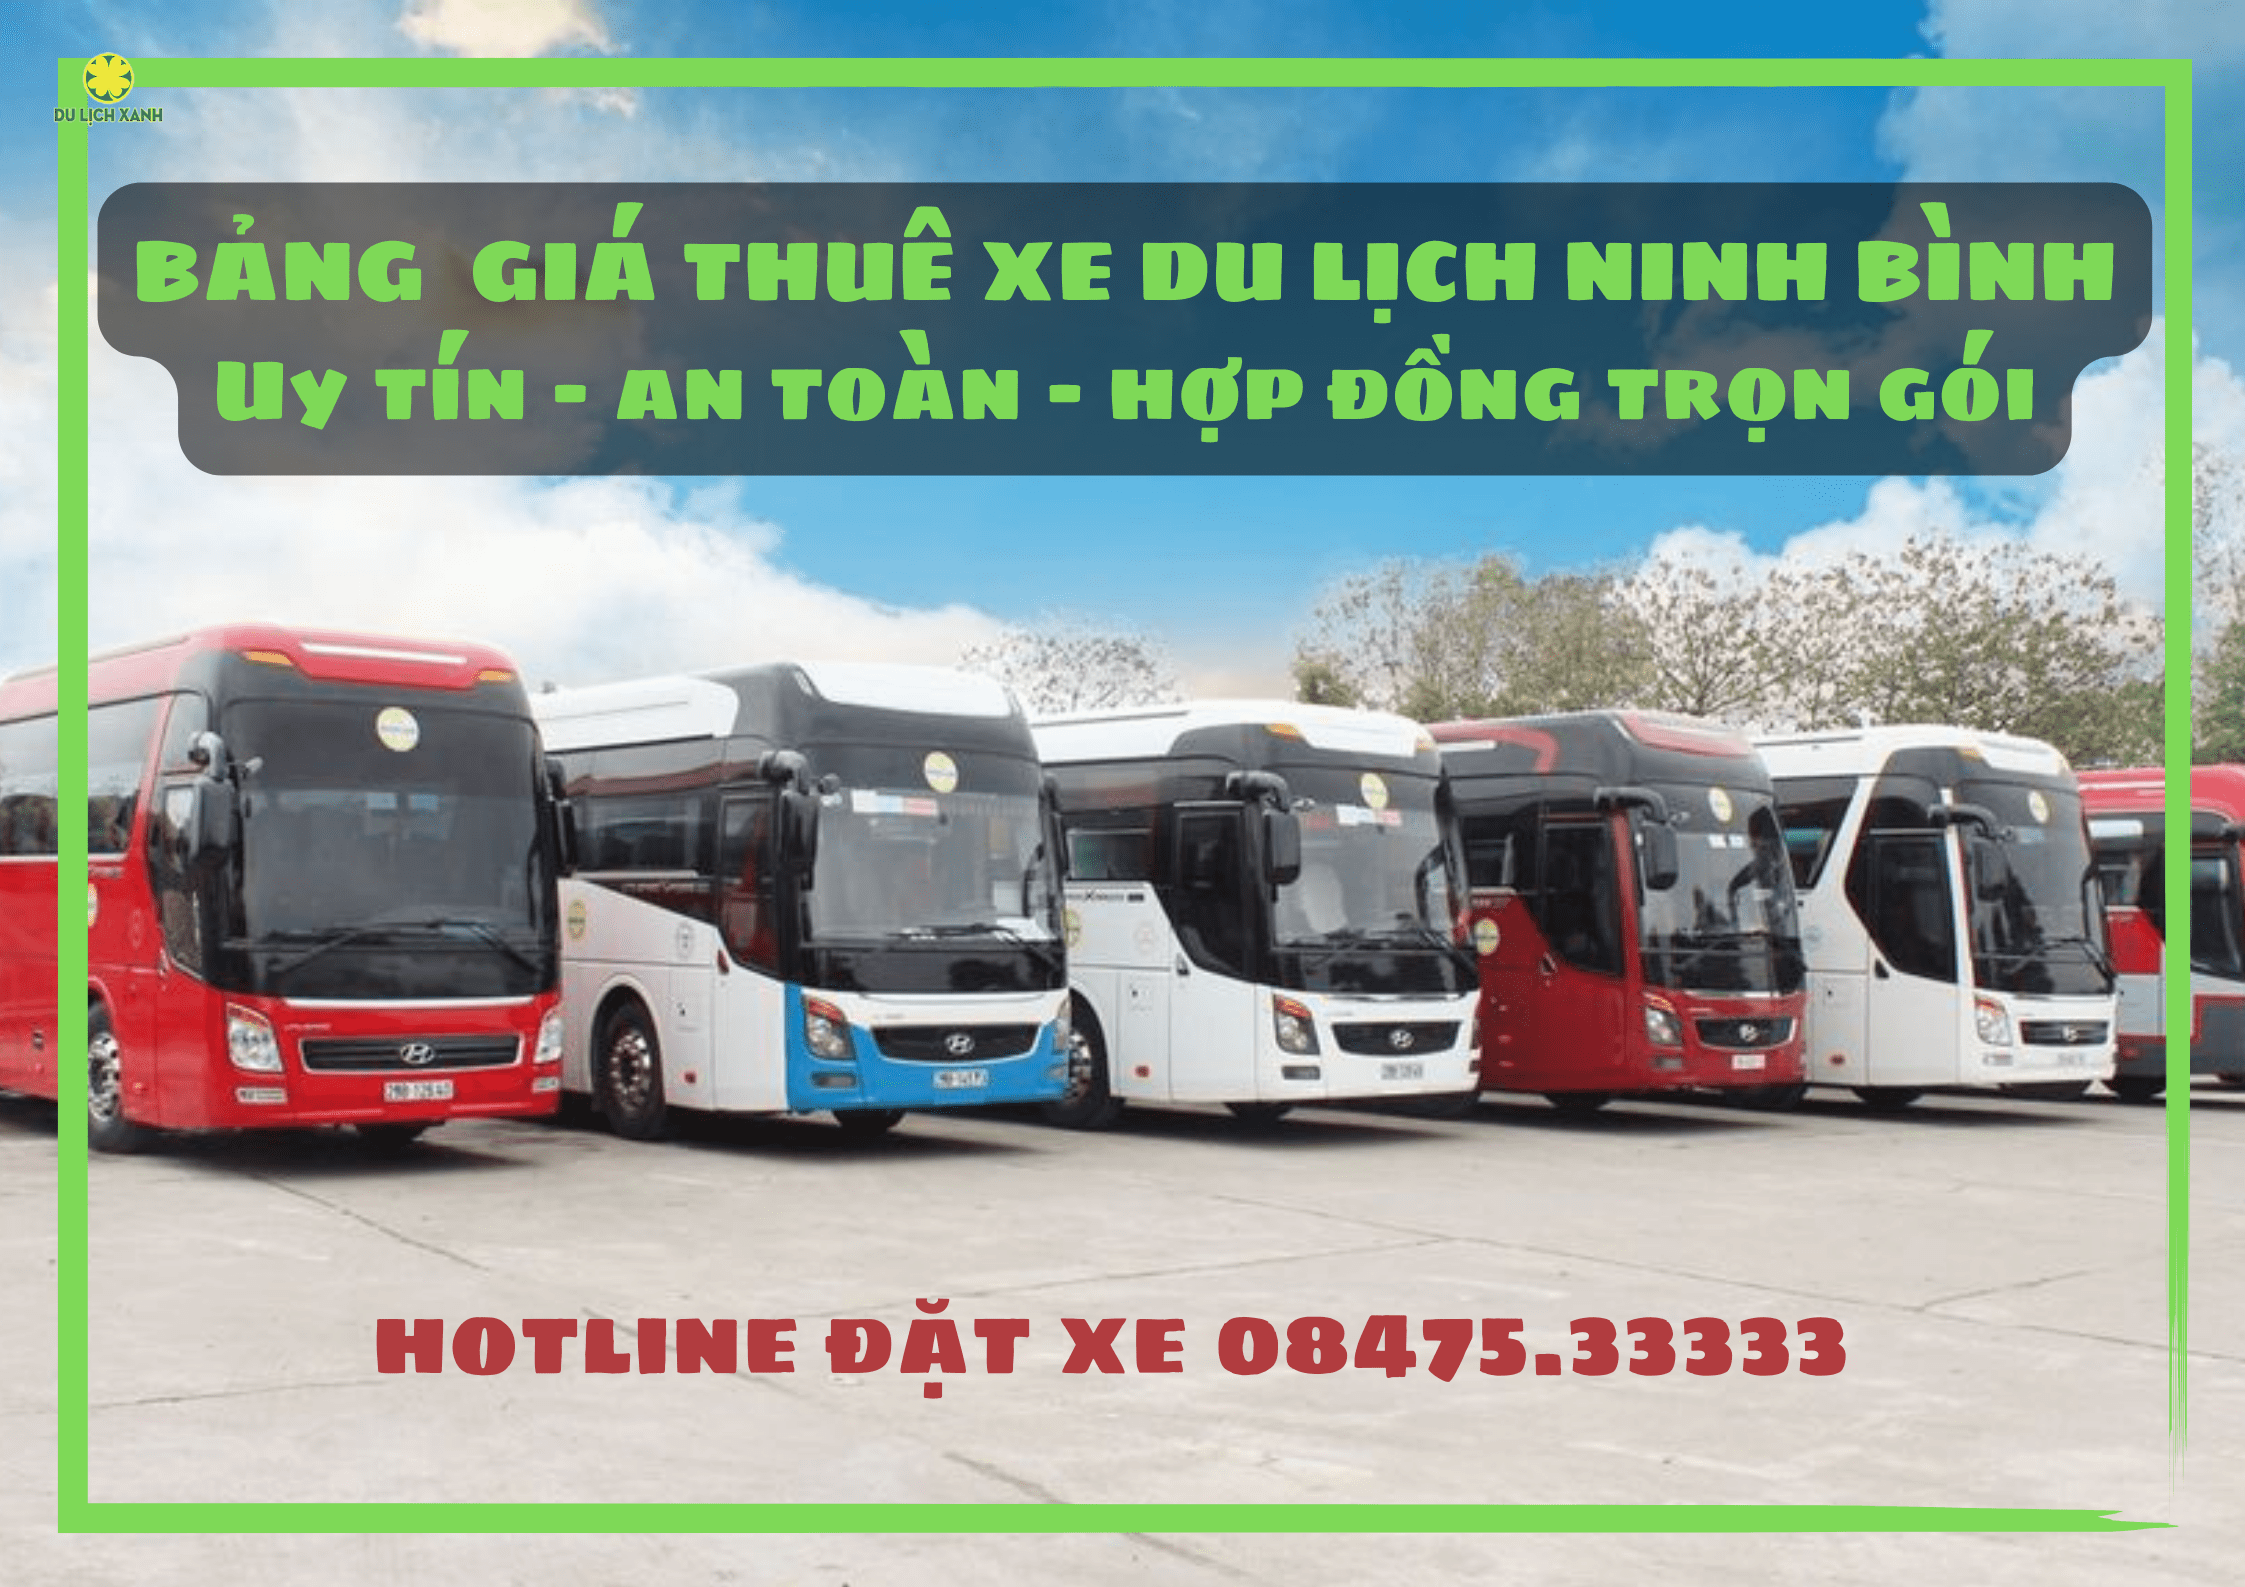 Bảng giá thuê xe du lịch tại Ninh Bình